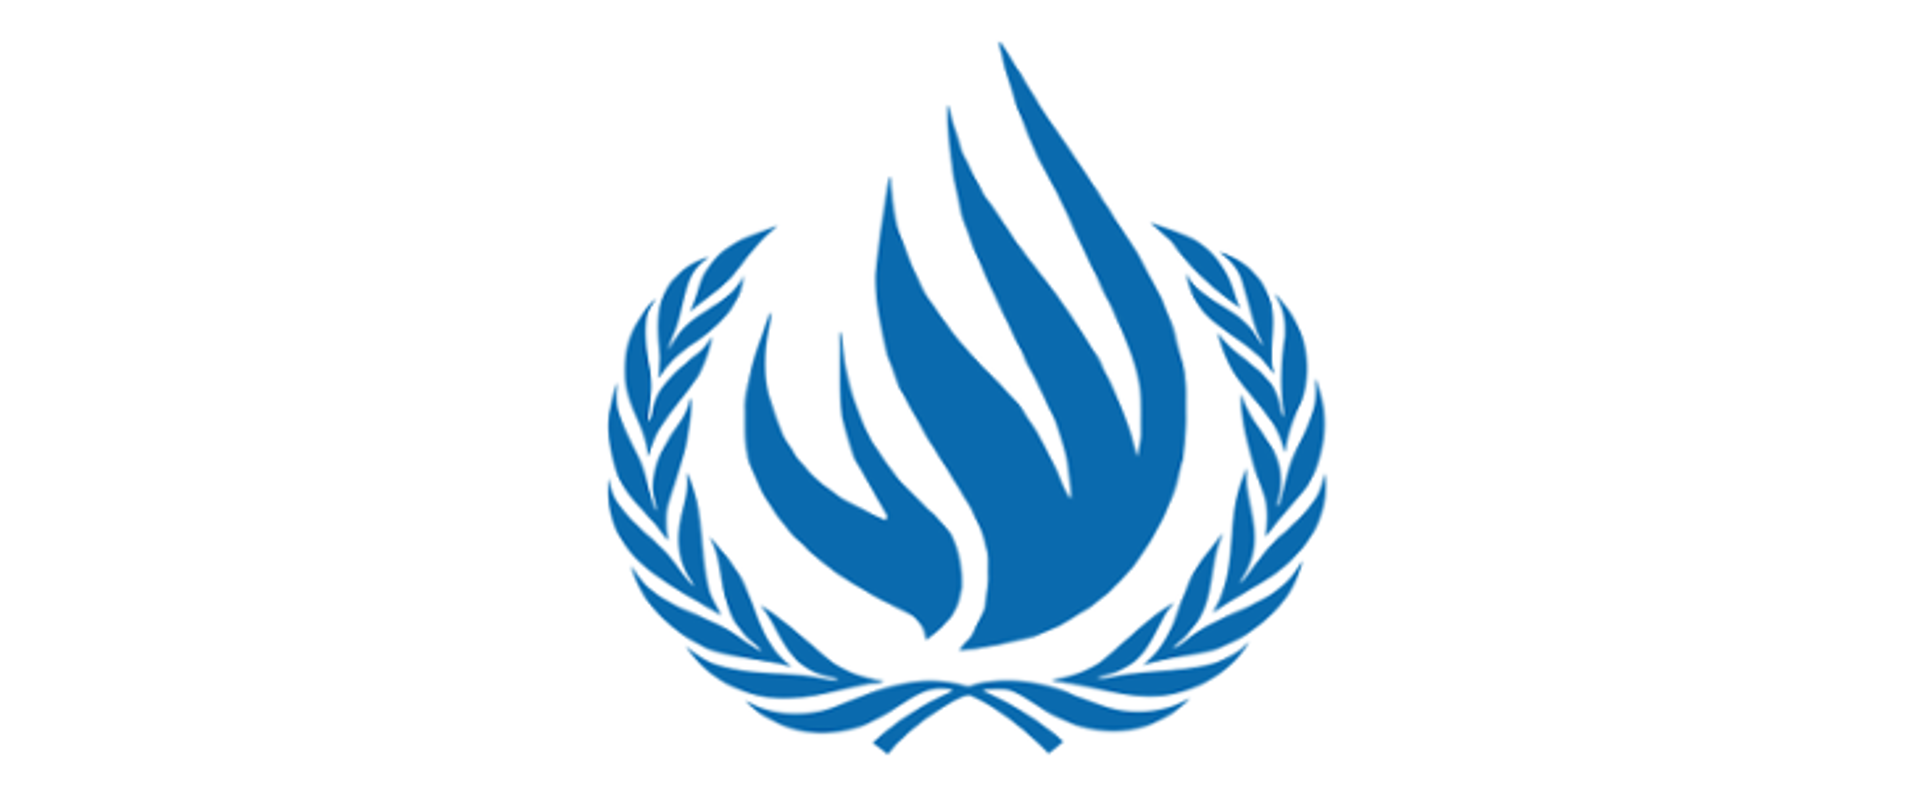 Совет по правам человека ООН эмблема. Управление Верховного комиссара ООН по правам человека. Верховный комиссар ООН по правам человека эмблема. Эмблема УВКПЧ ООН.